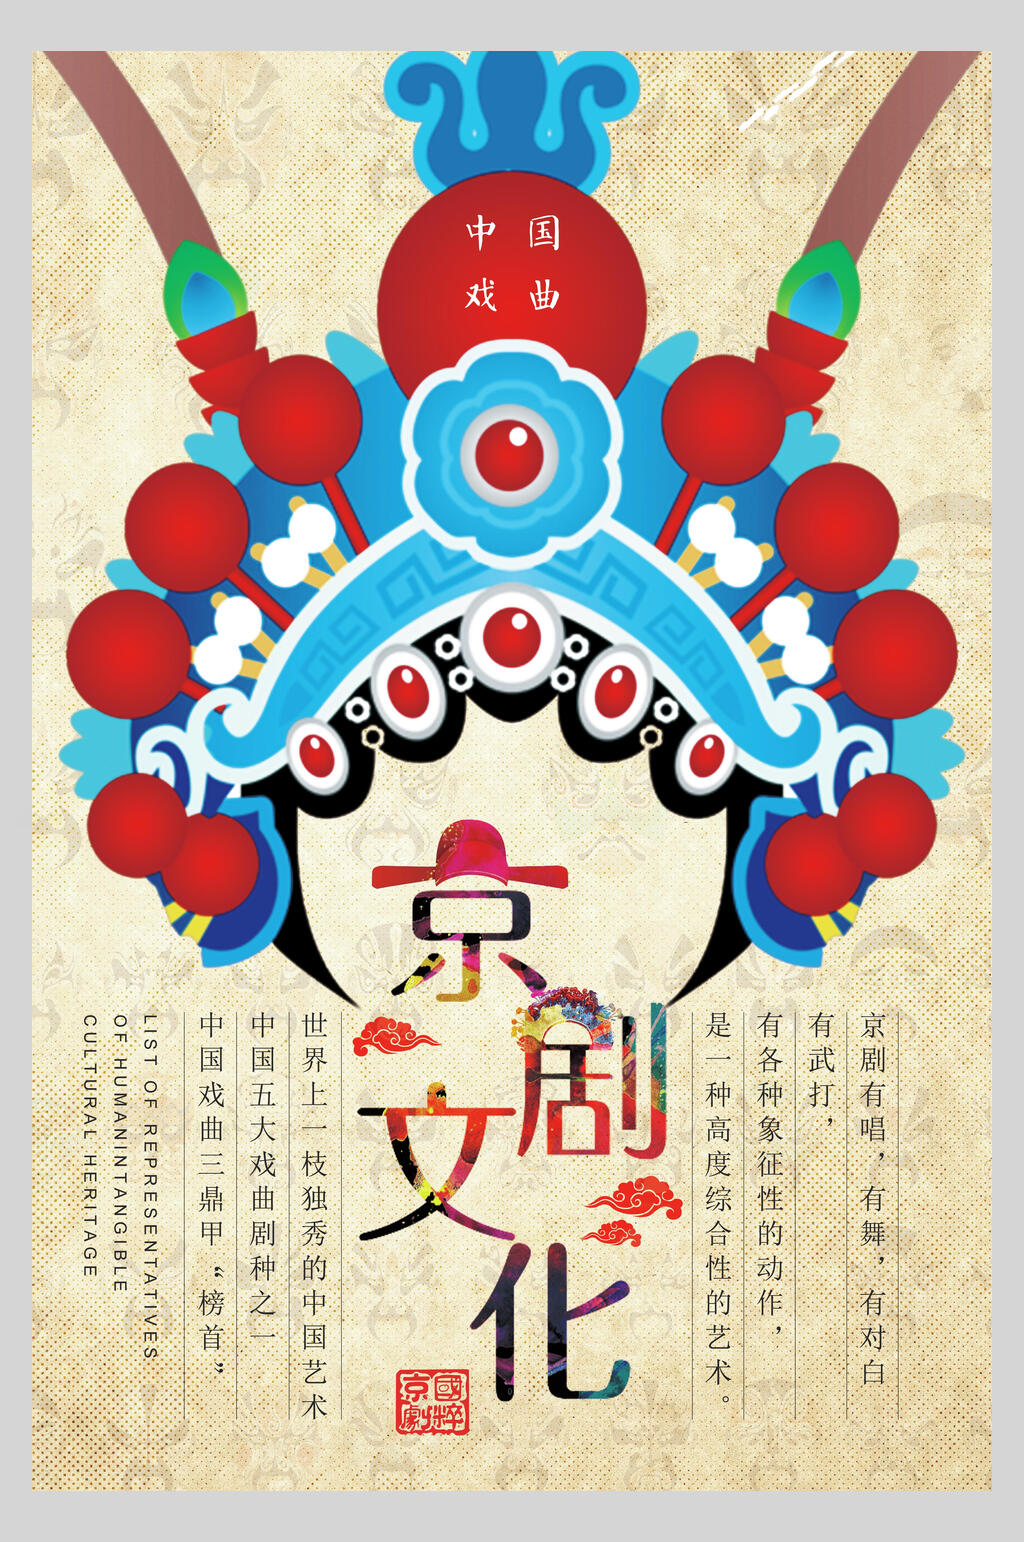 京剧文化海报图片